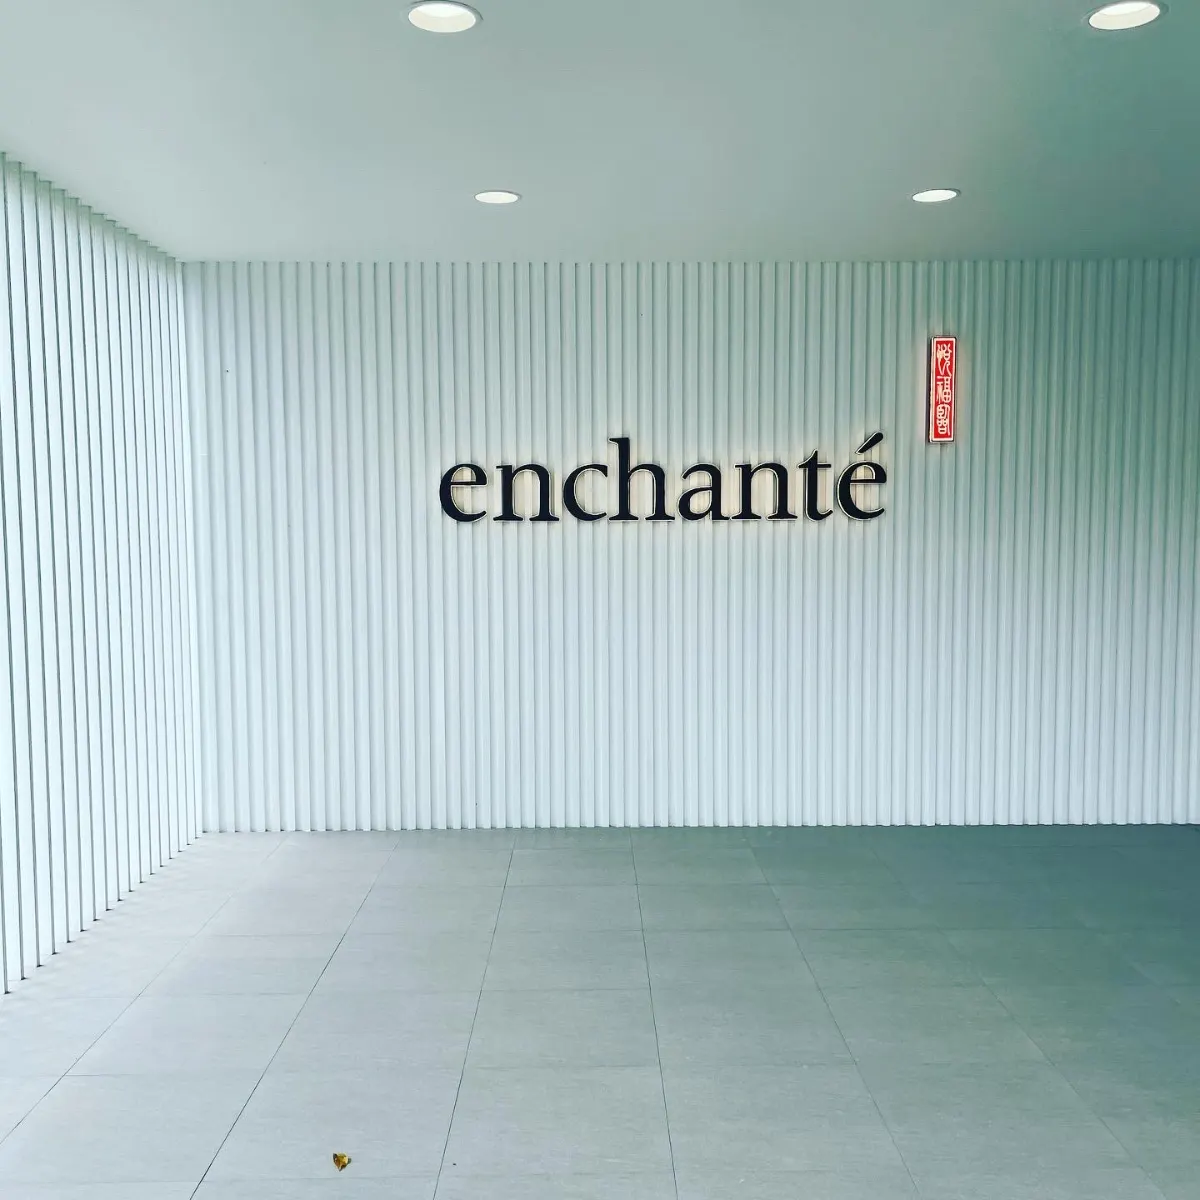 Enchante Condo and Facilities